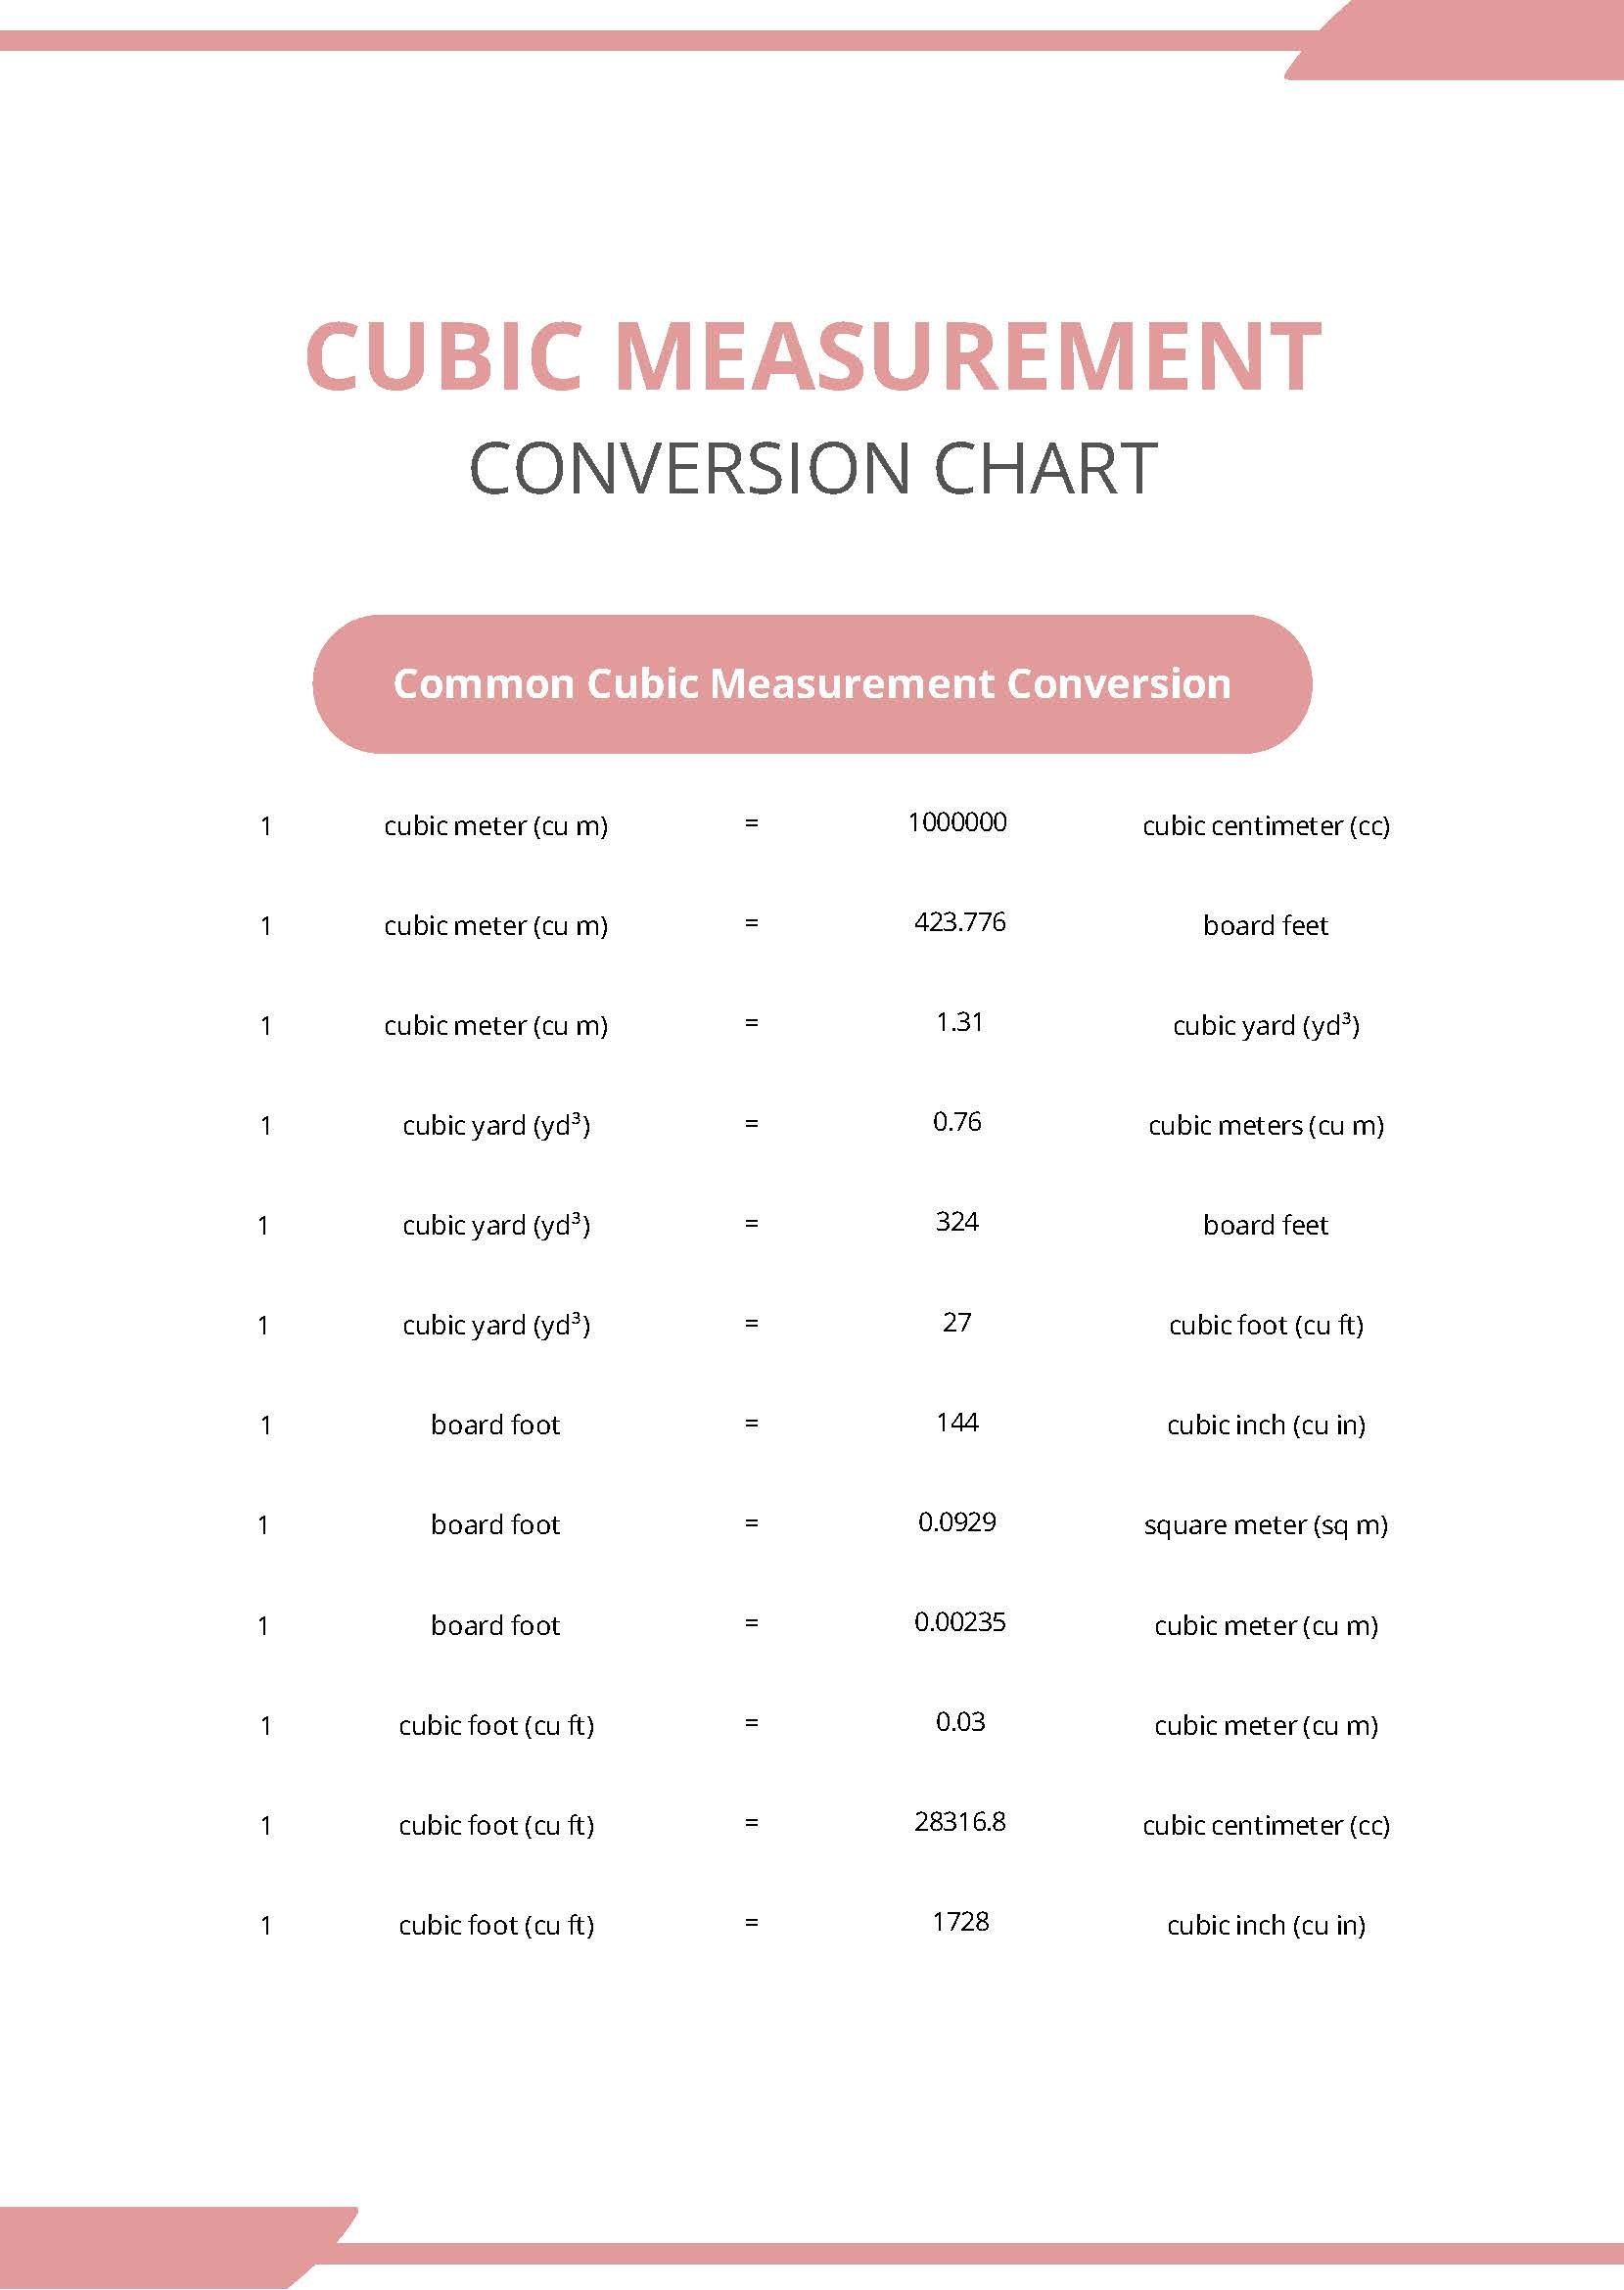 Cubic Measurement Conversion Chart in PDF